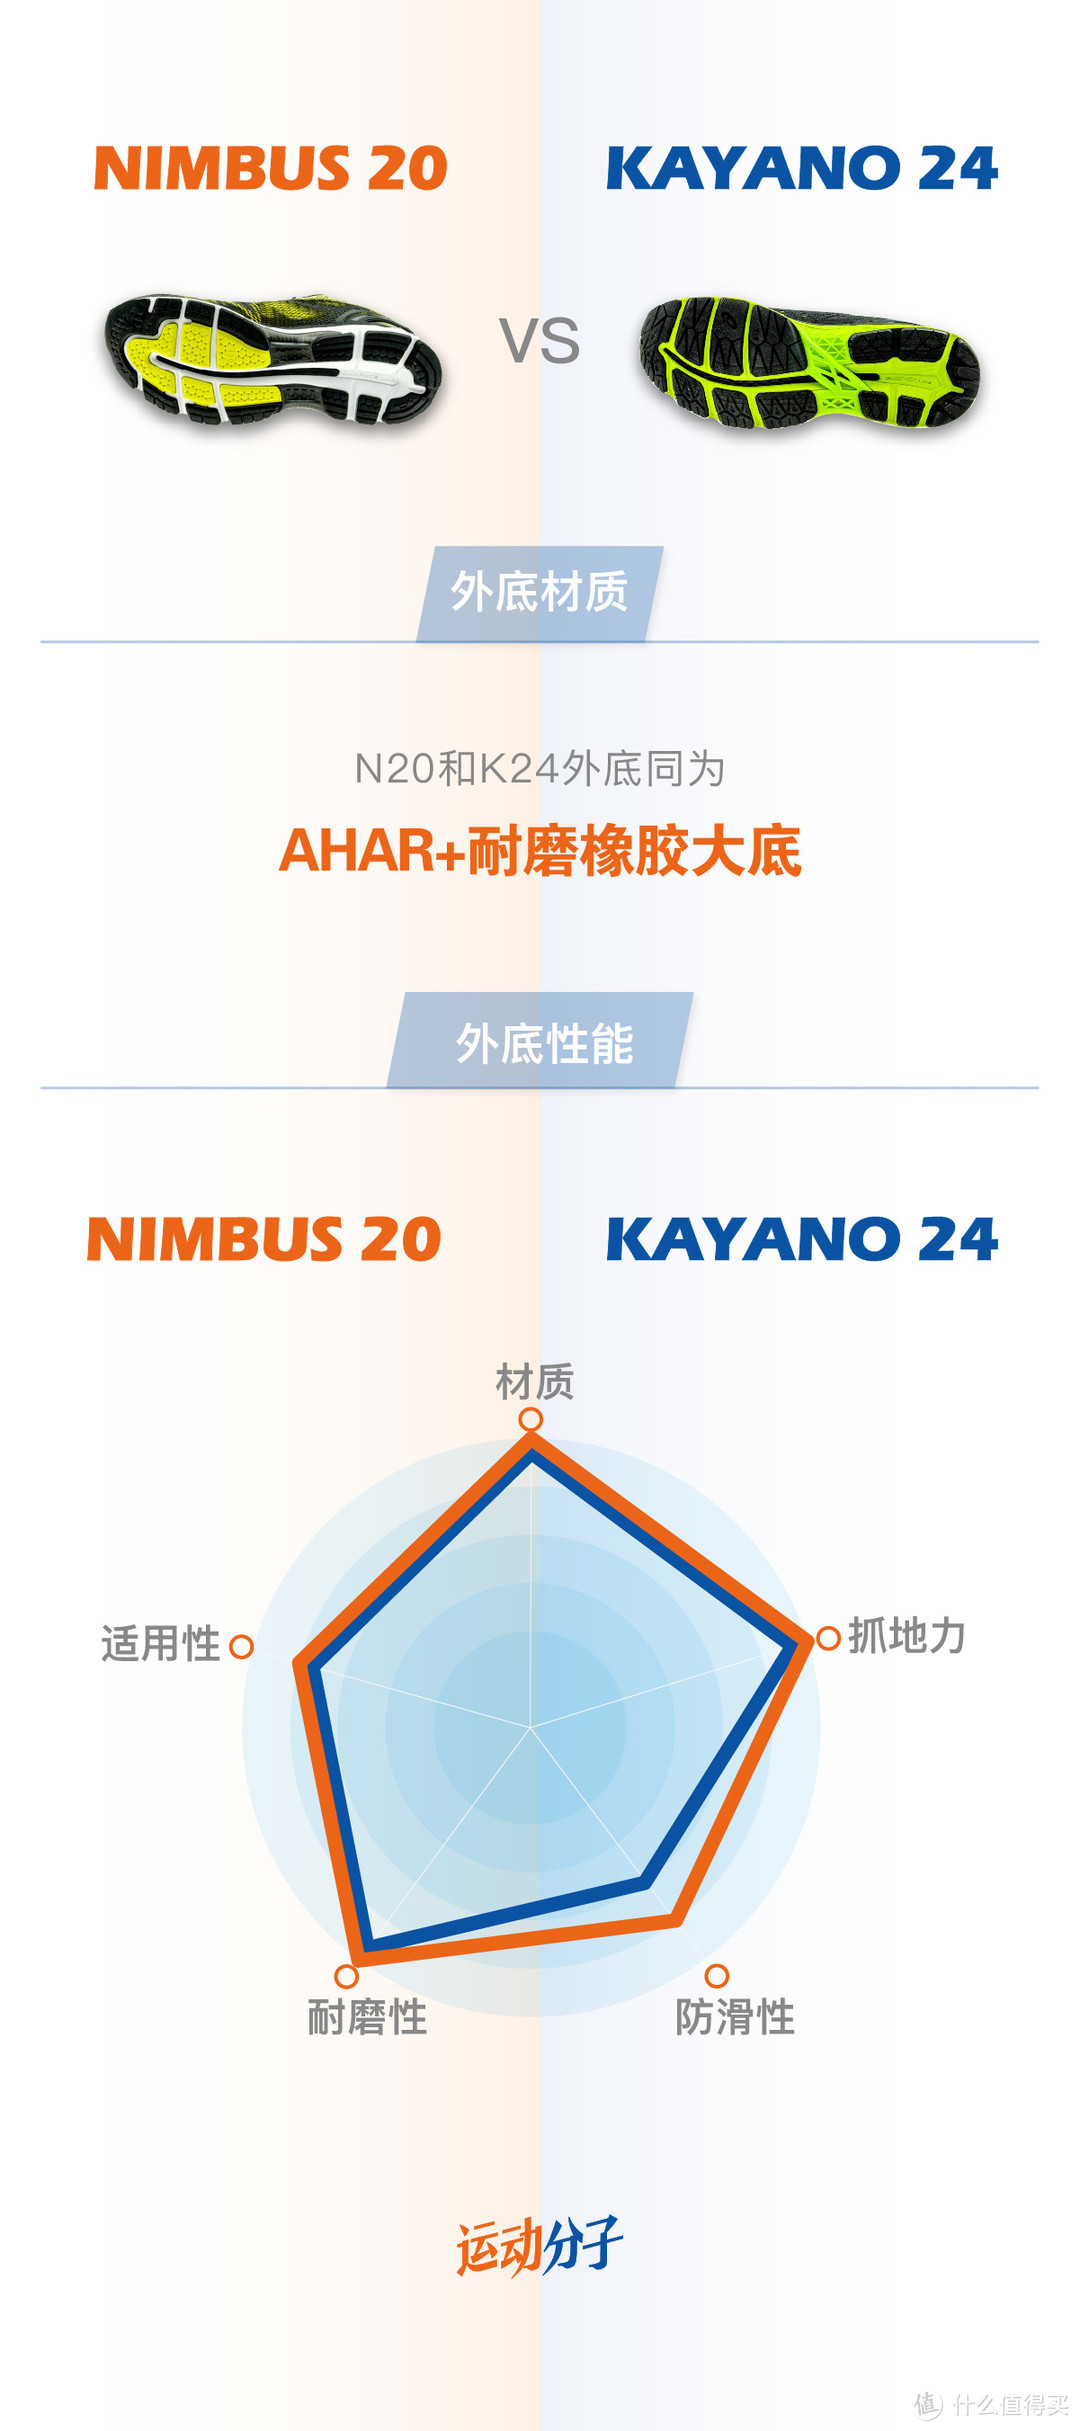 亚瑟士asics Nimbus 20 VS Kayano 24：升级再升级，两双传统跑鞋的极致调校之路